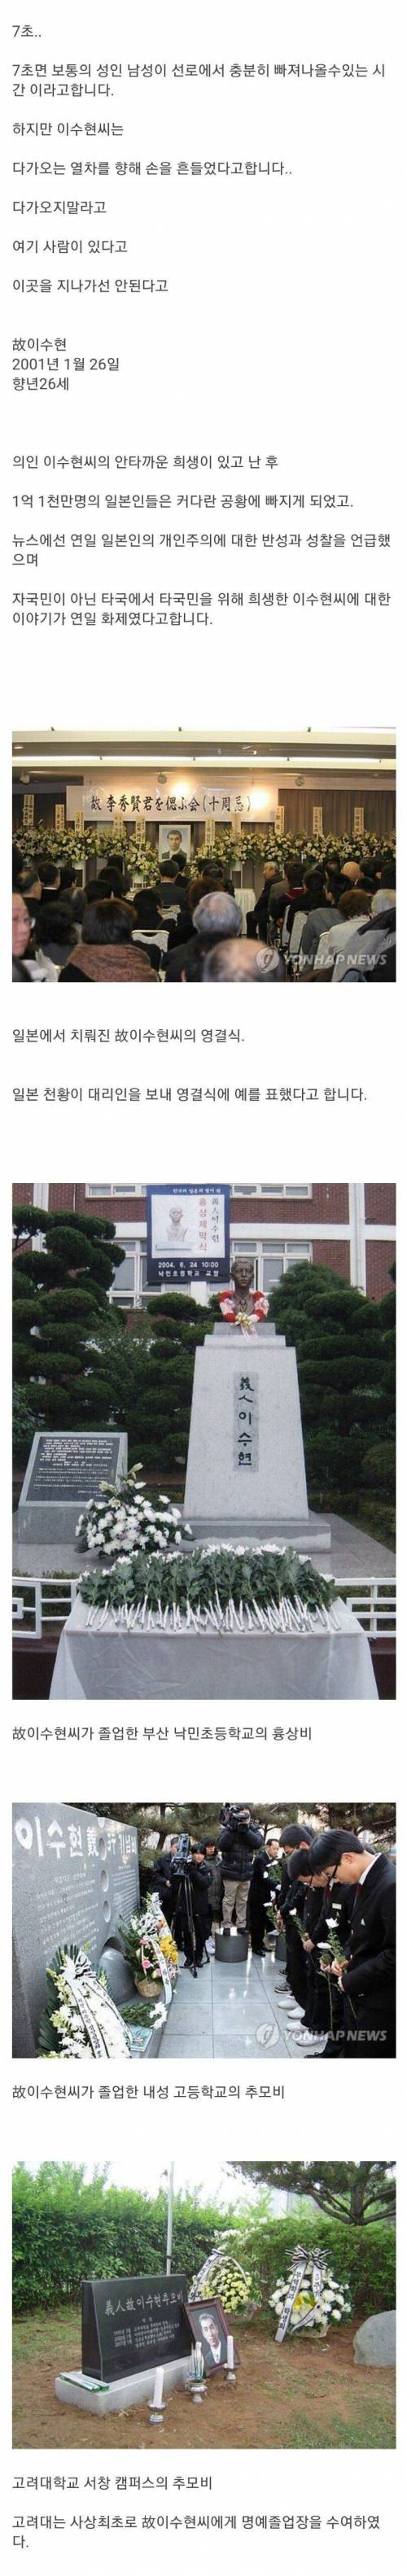 [스압] 일본인을 구하기 위해 목숨을 건 한국인